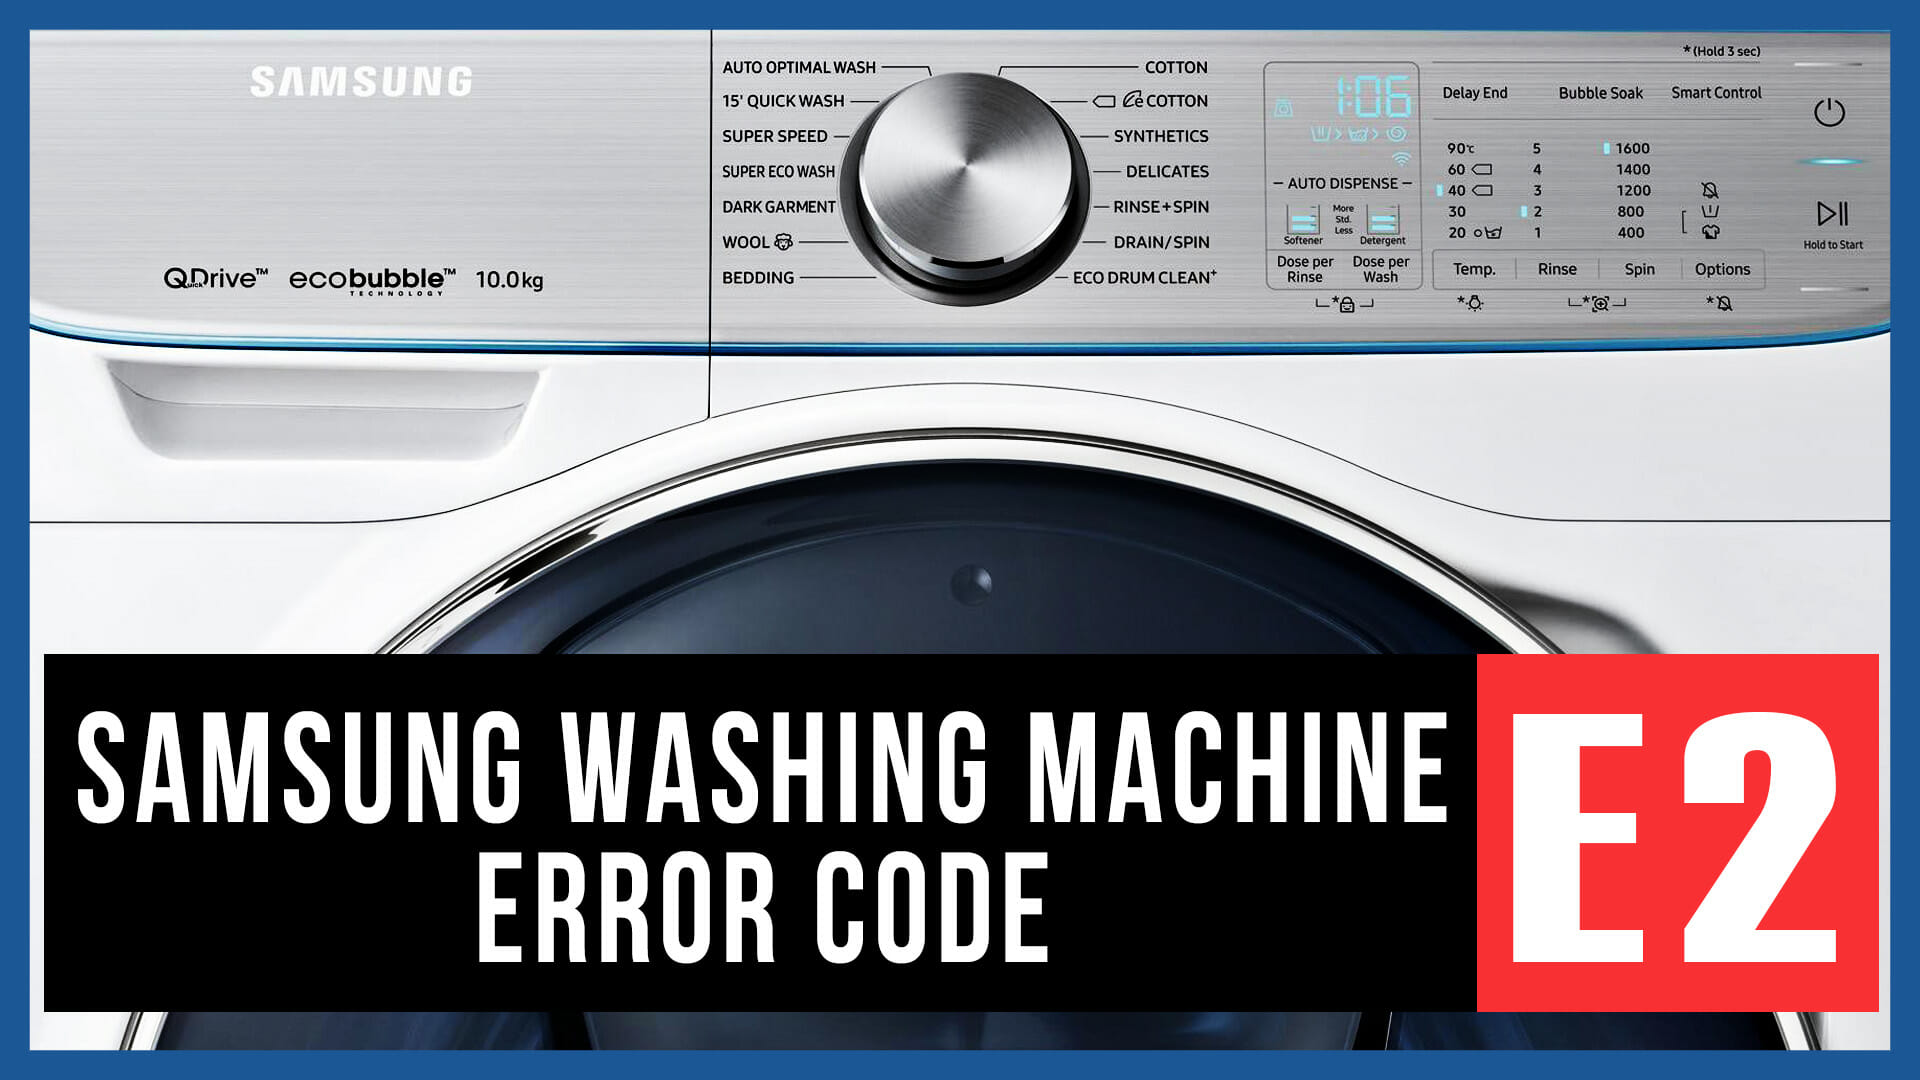 Samsung washing machine error code E2